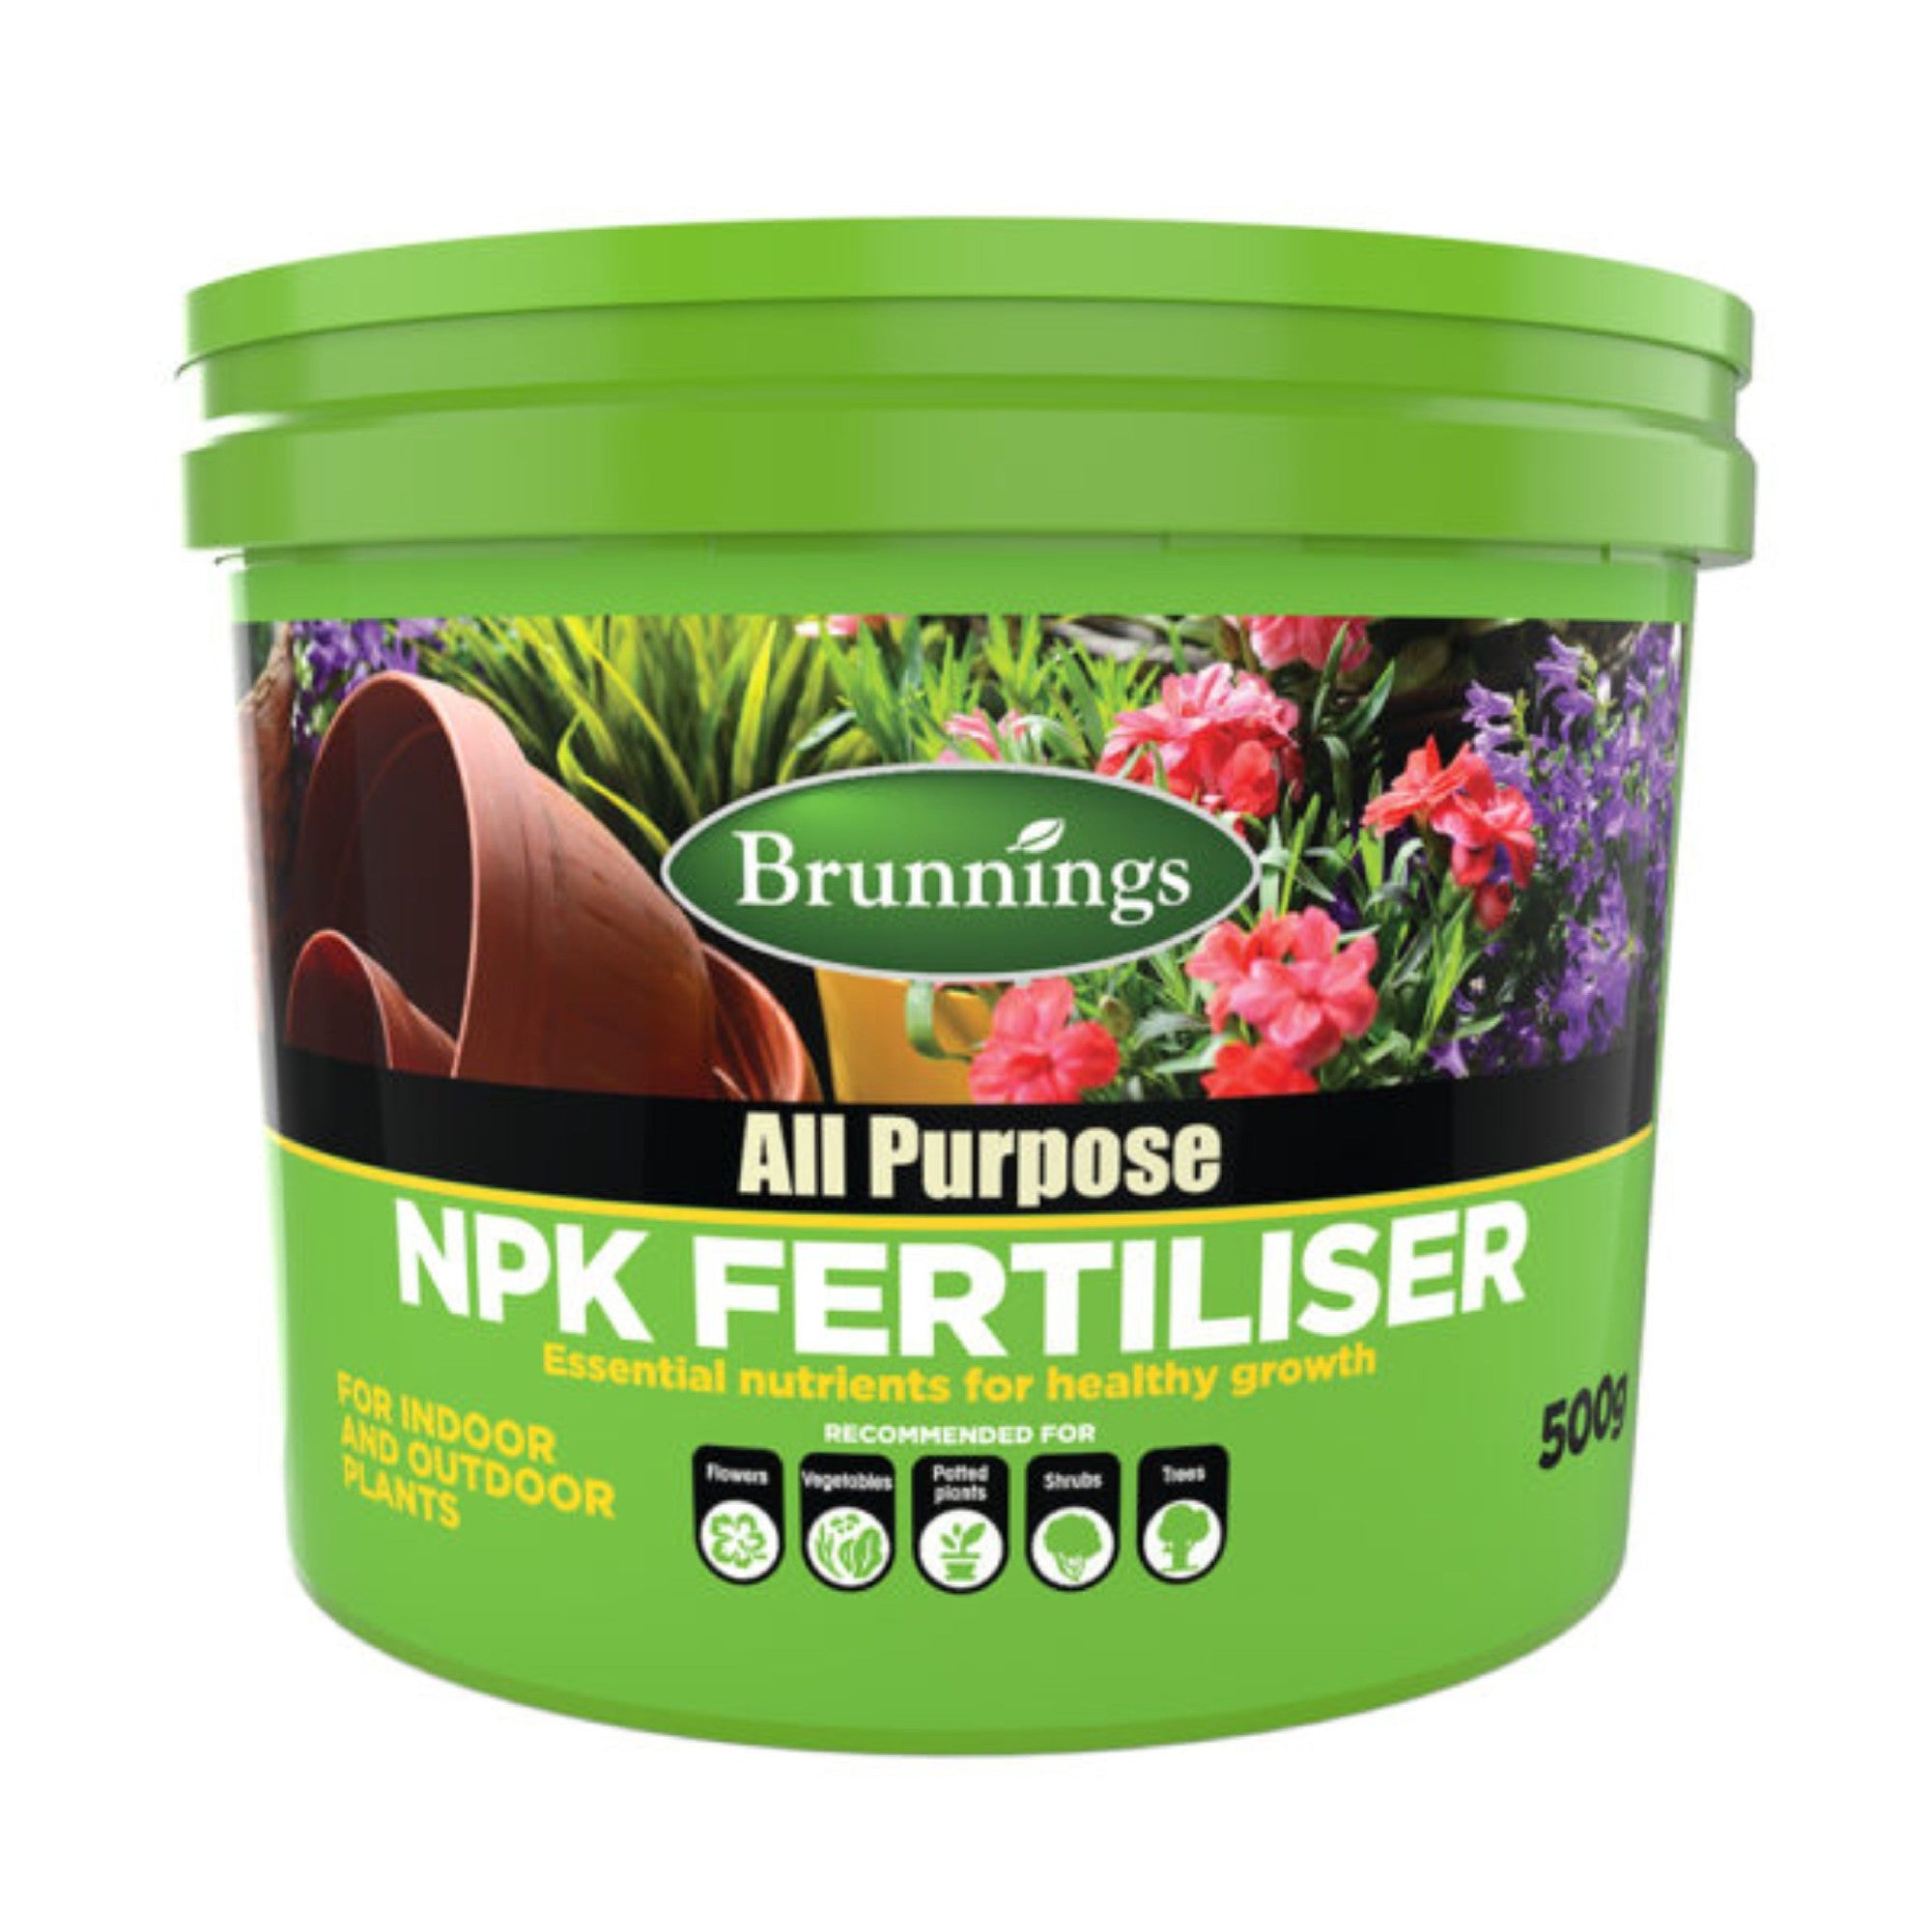 All Purpose Npk Fertiliser 500g